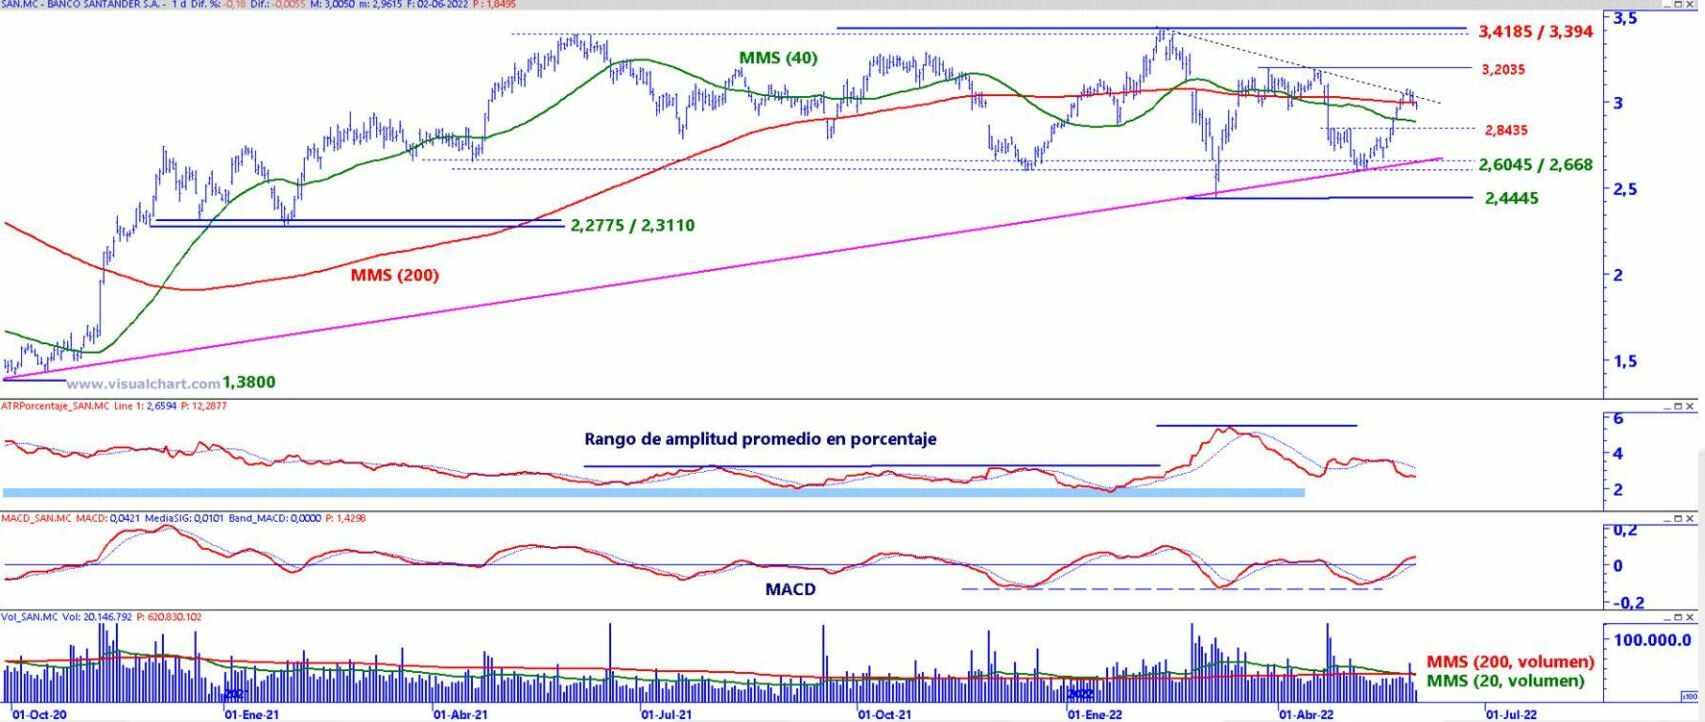 Banco Santander análisis técnico del valor 